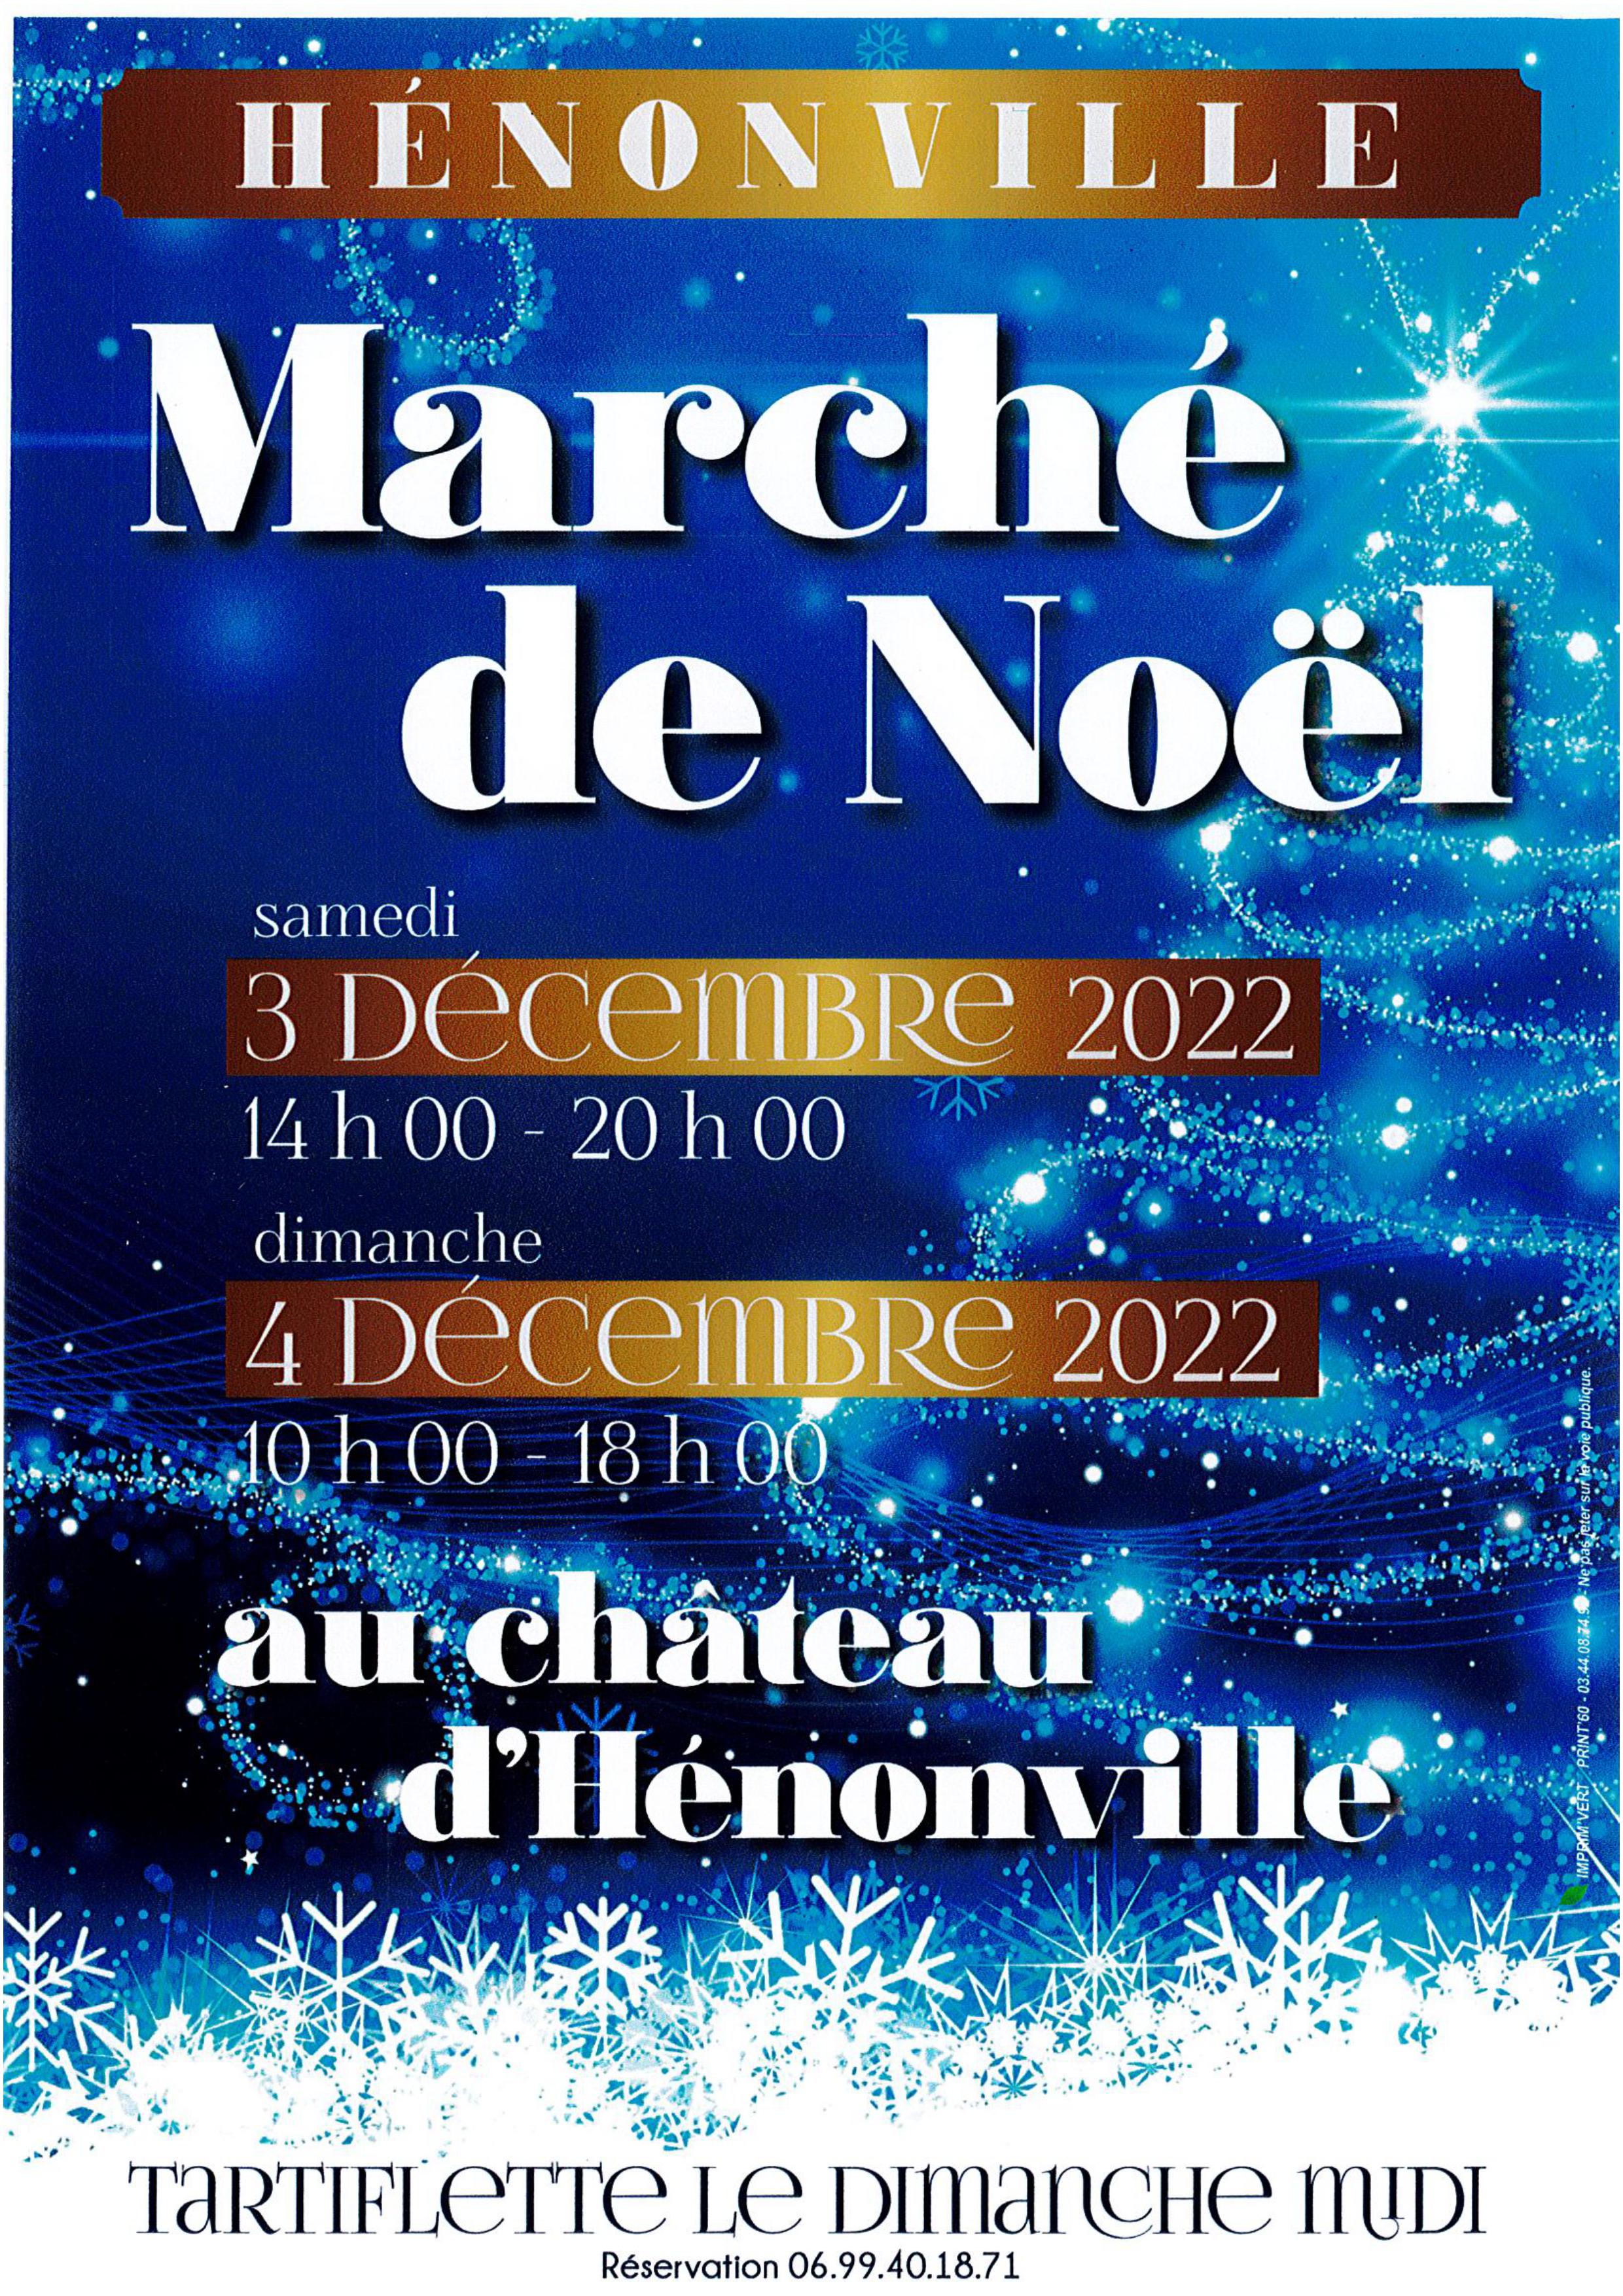 Marché de Noël Hénonville